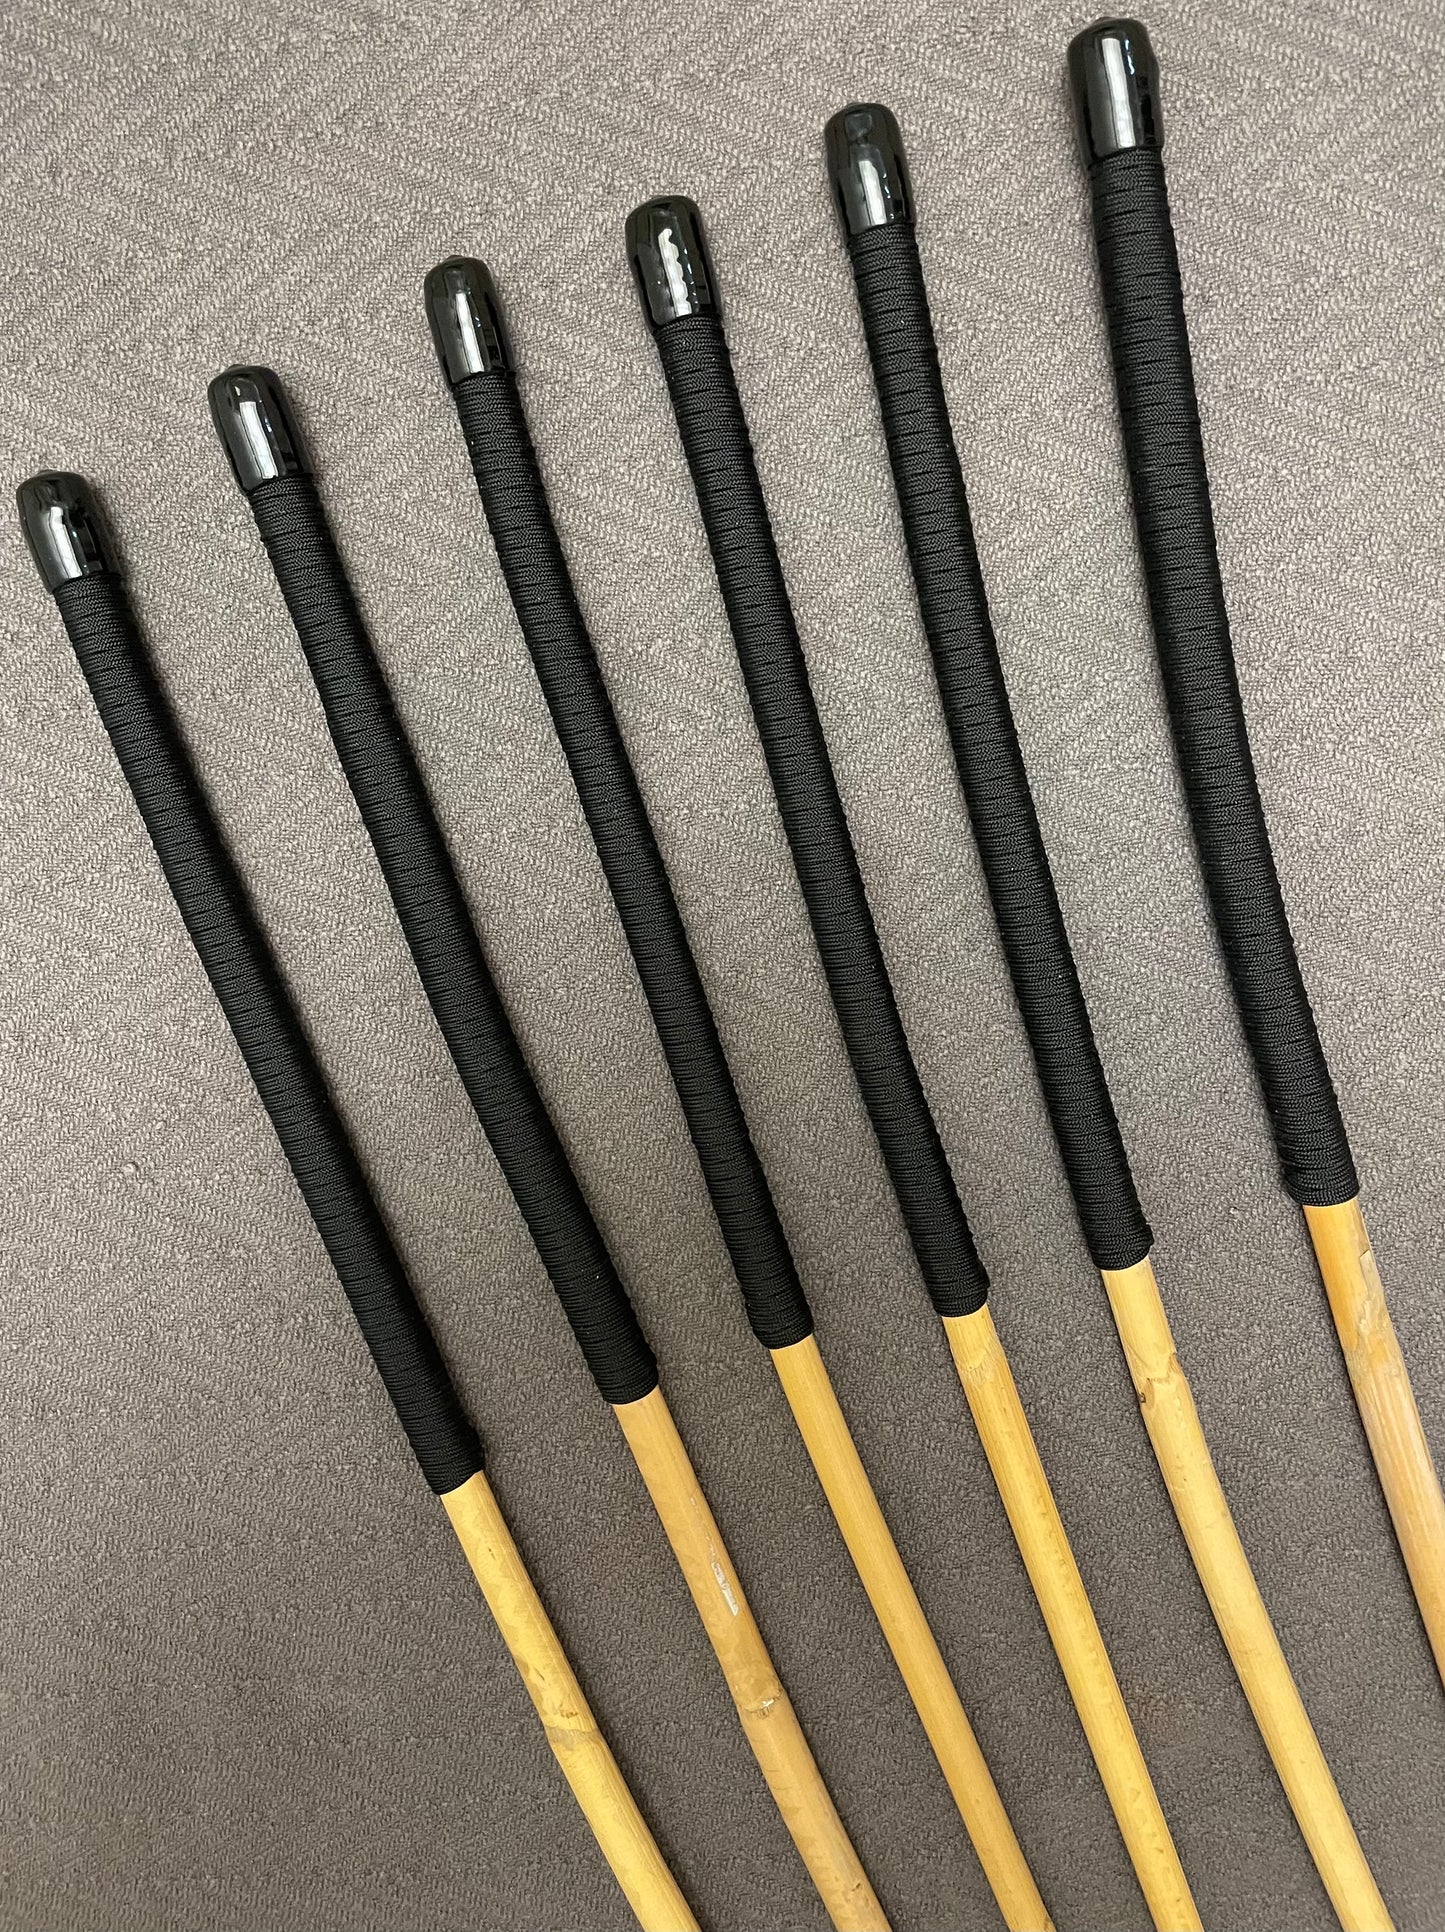 OTK Classic Kooboo Cane Six - Set of 6 Kooboo OTK Punishment canes - BLACK Handles - 60 cms L & 10-12.5 mm D ( Assorted )